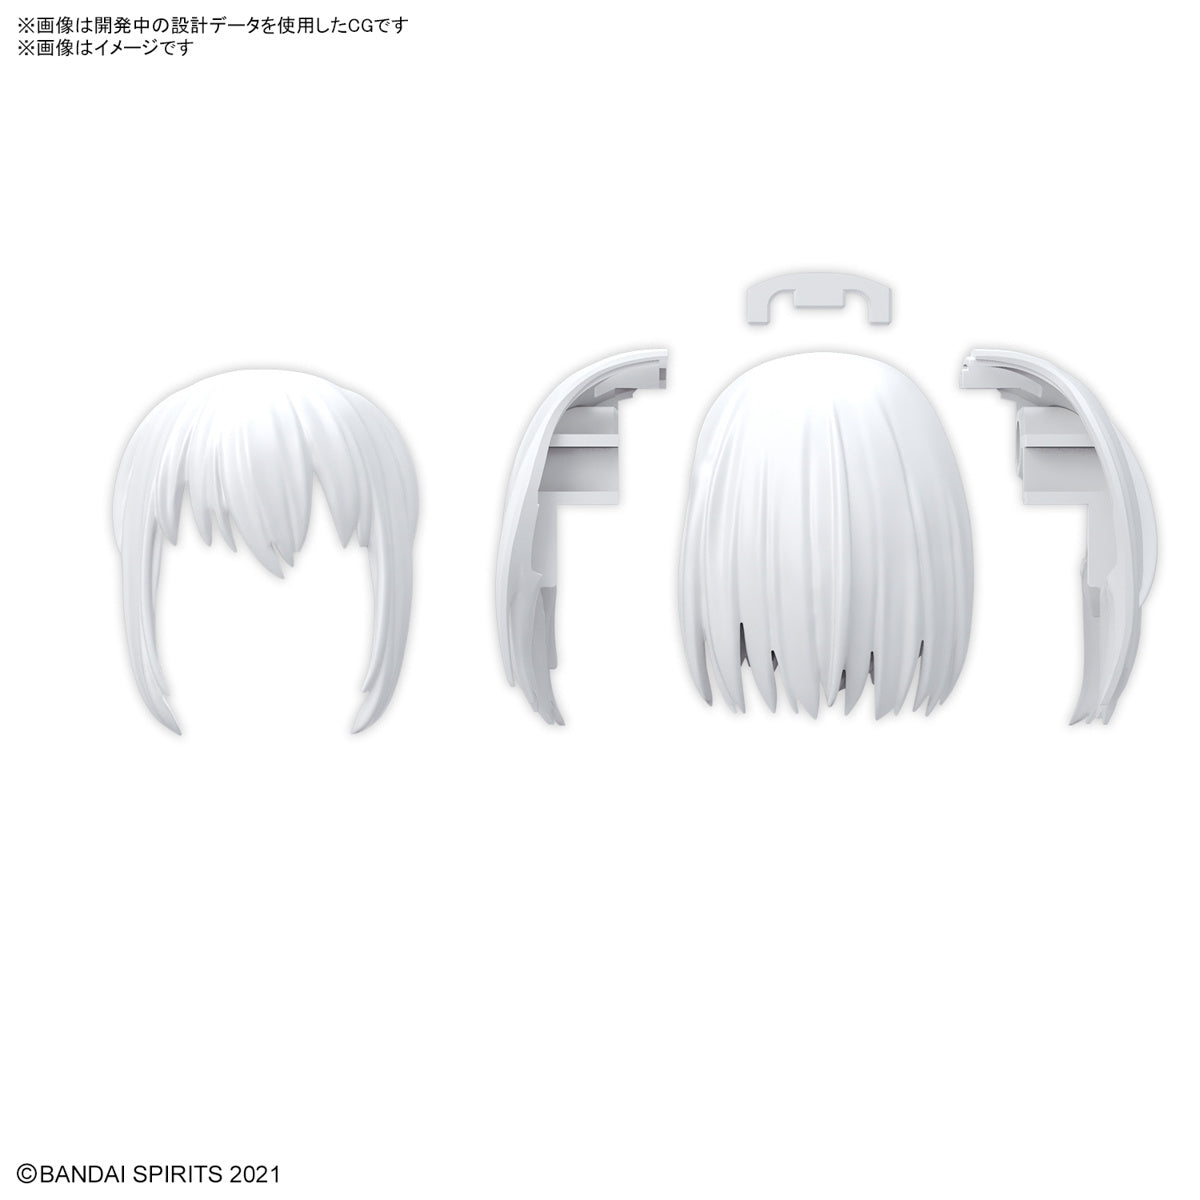 Bandai 30 Minutes Sisters 30MS Option Hair Style Parts Vol. 10 Accessory Kit (Box/4)